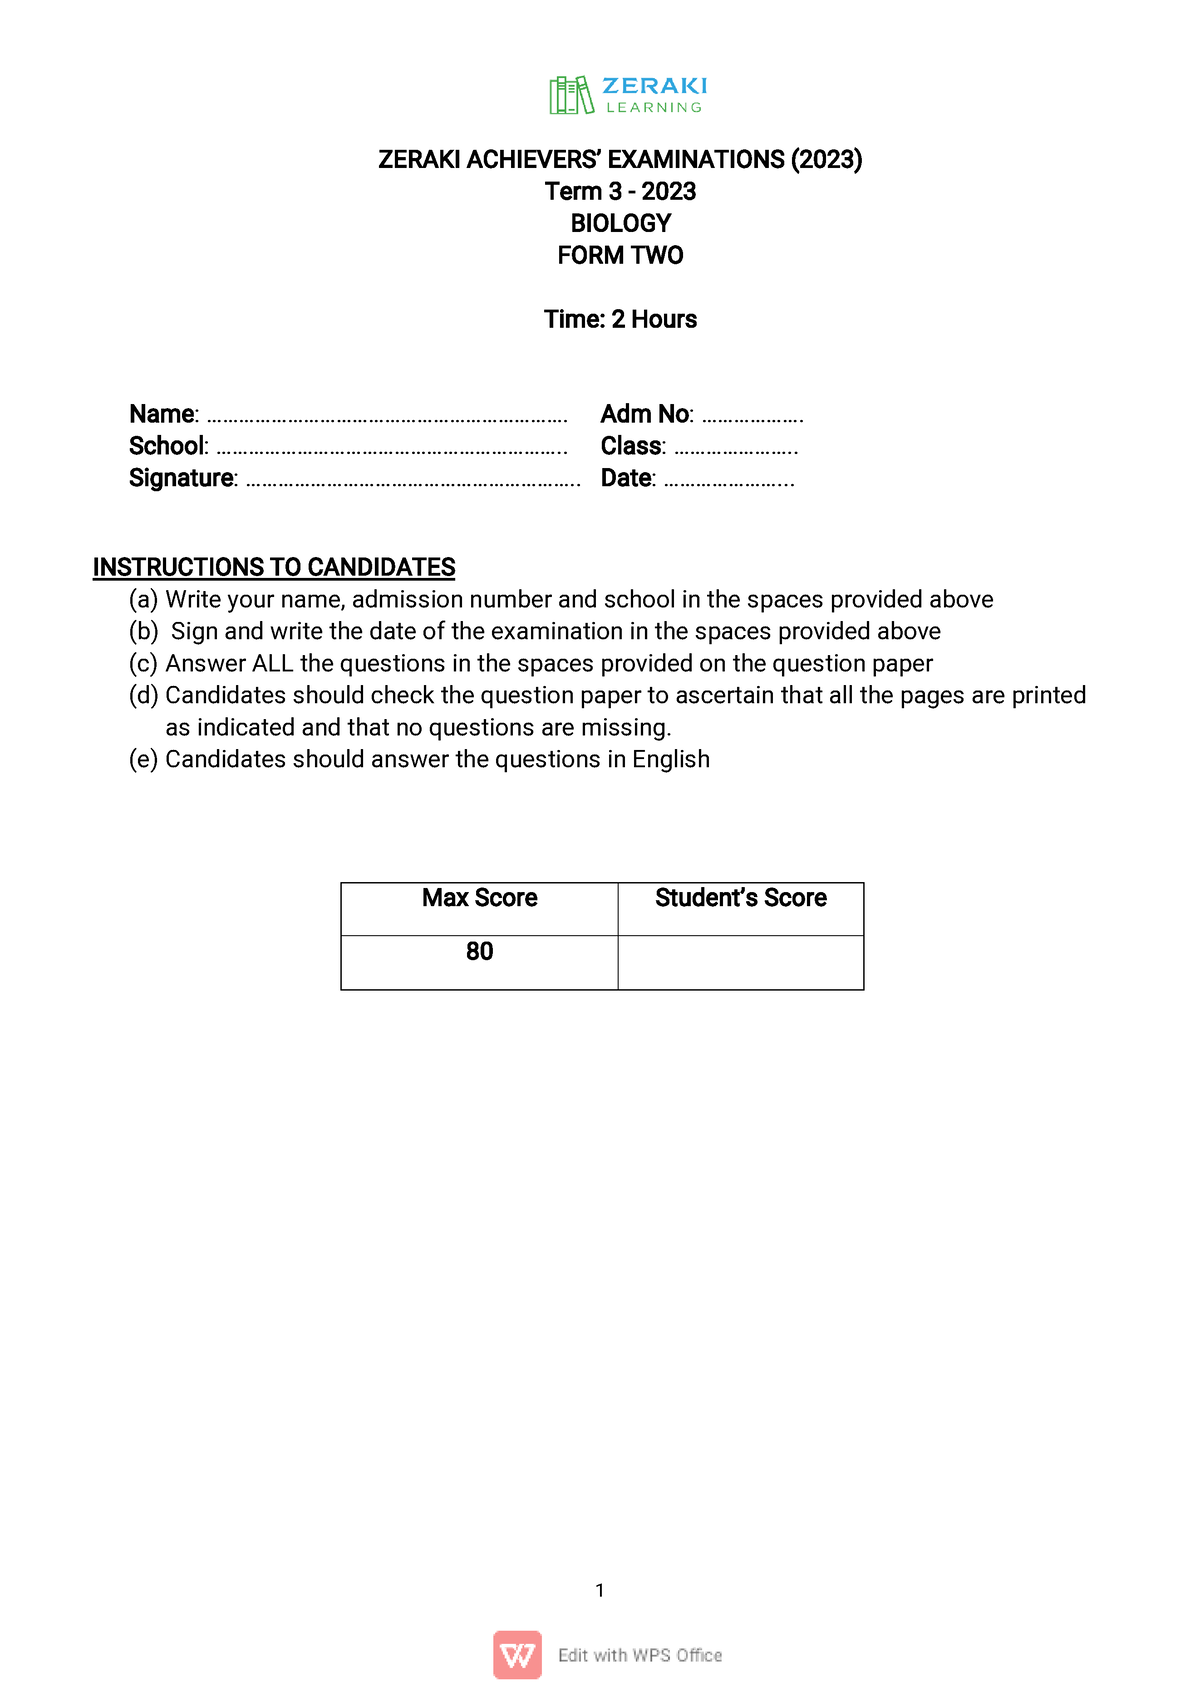 zeraki assignments download form 2